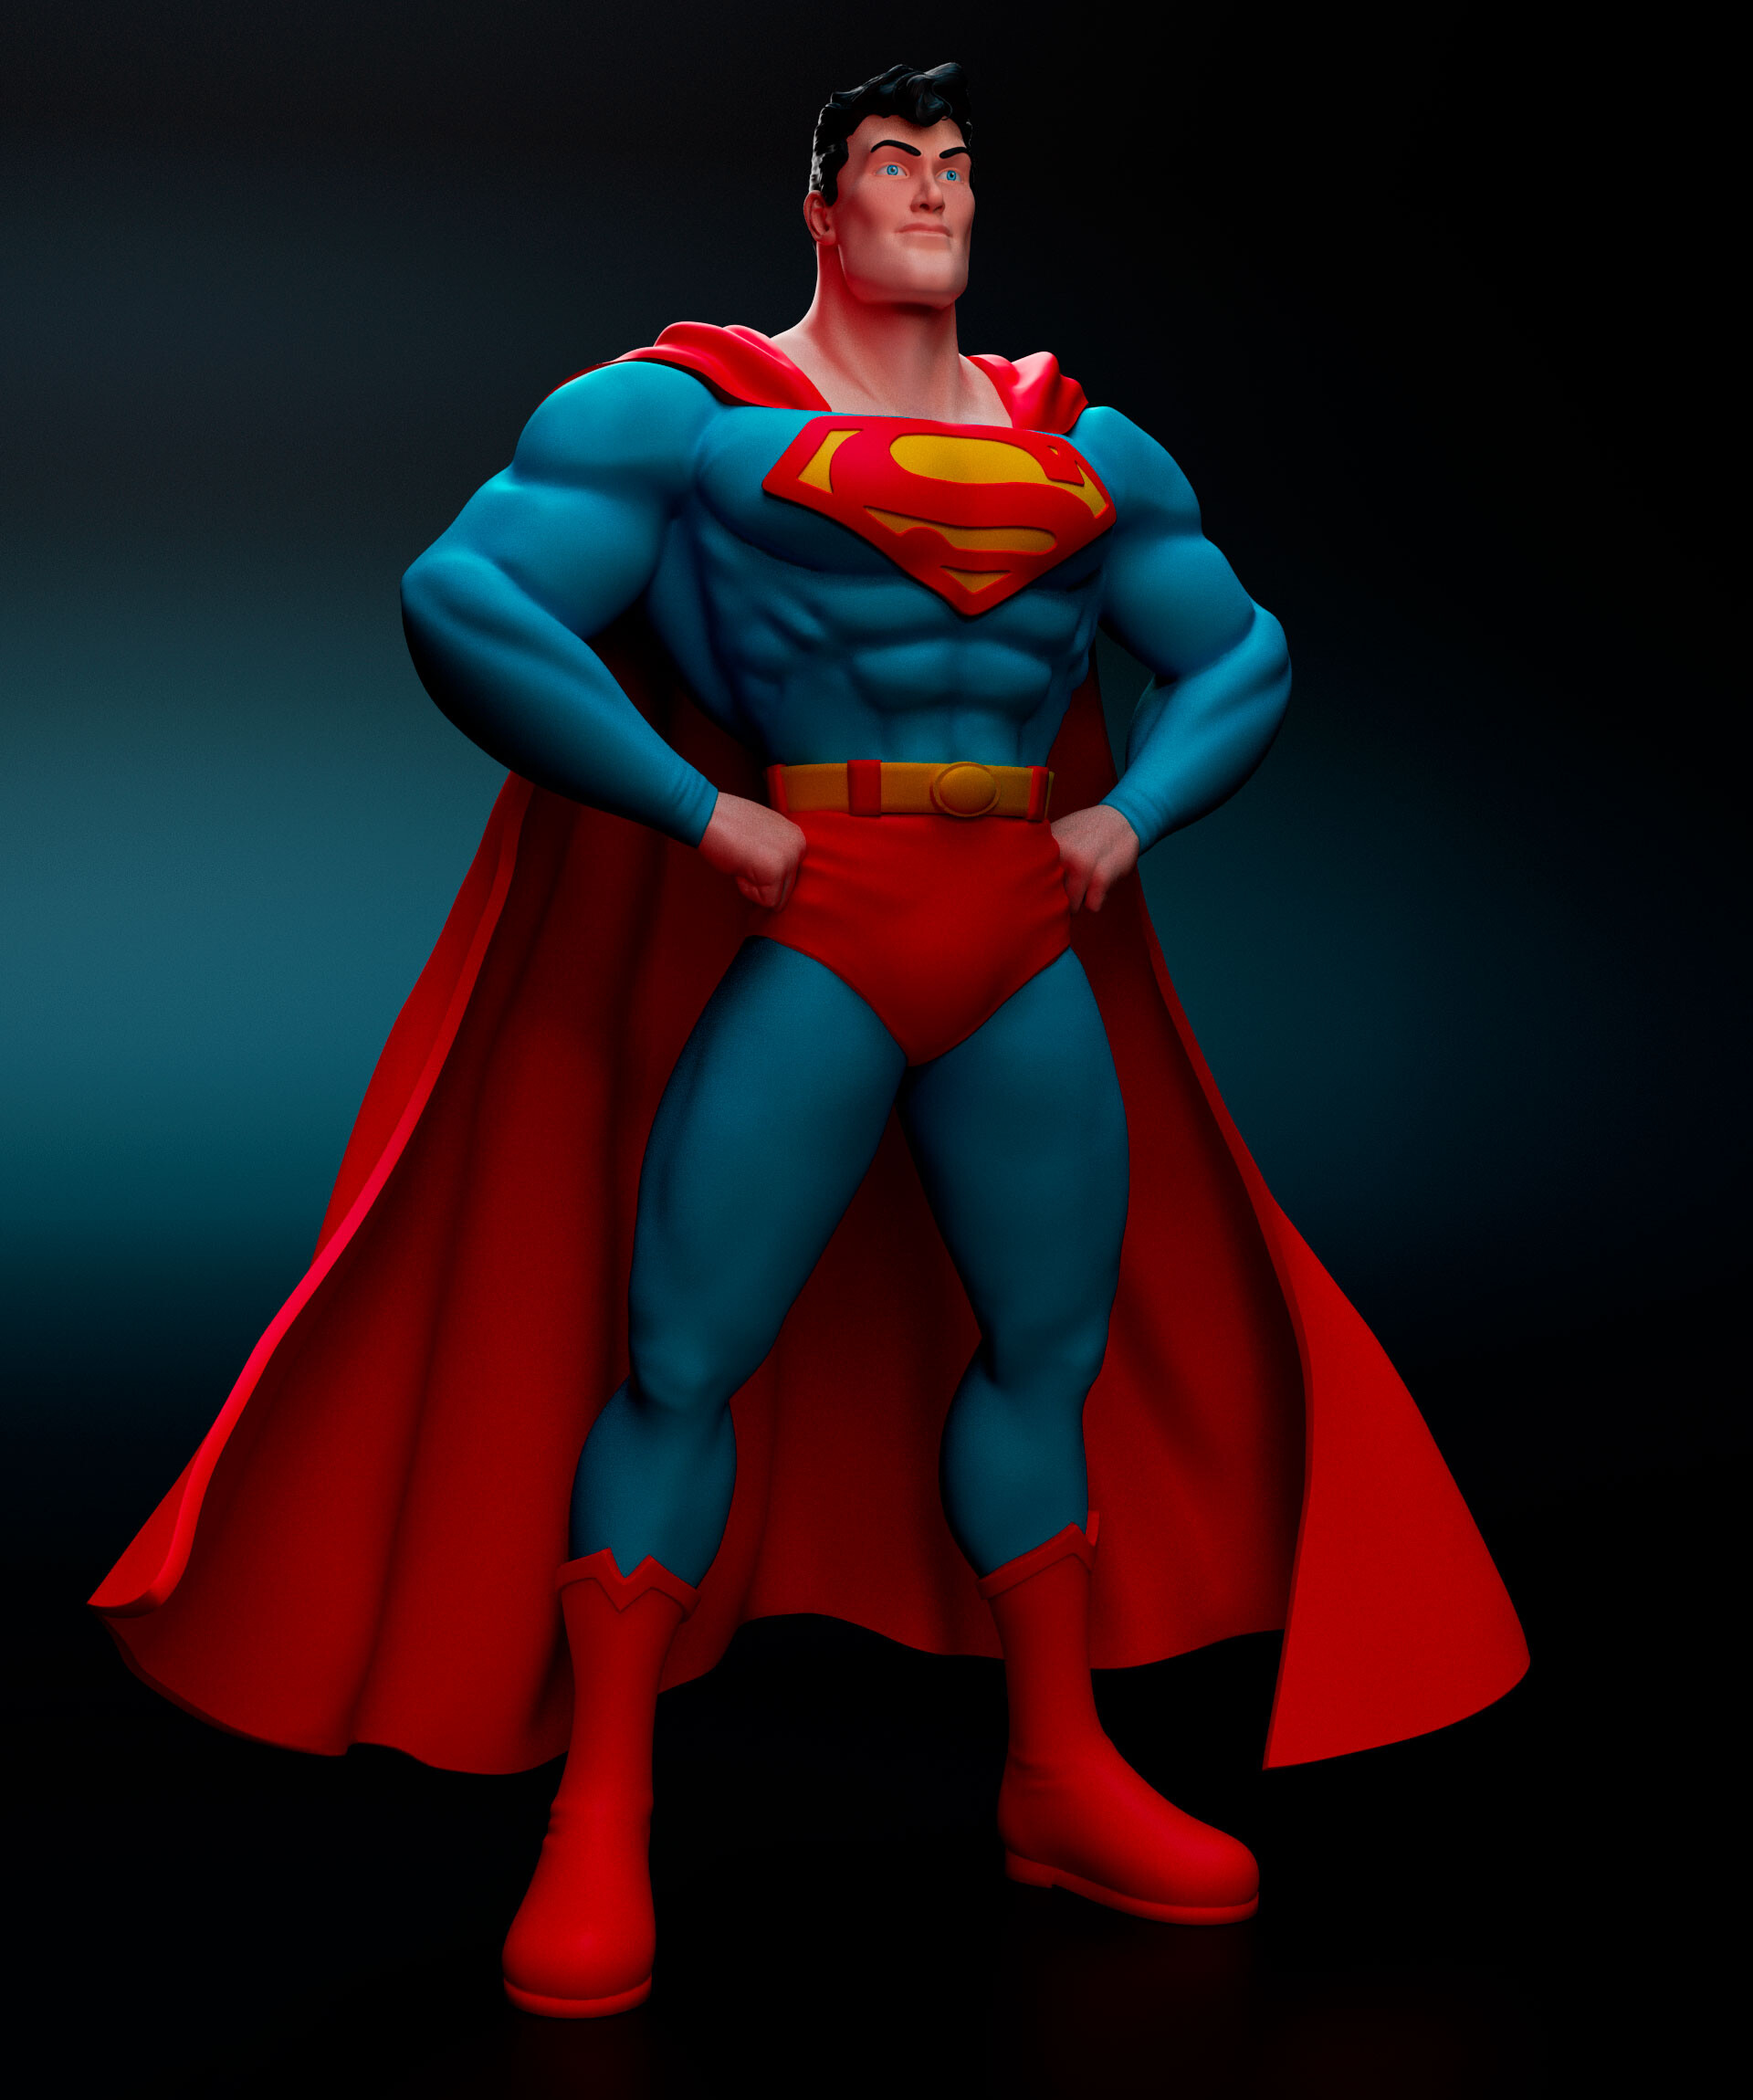 ArtStation - 1/4 Scale Fan Art Superman Statue I Painted